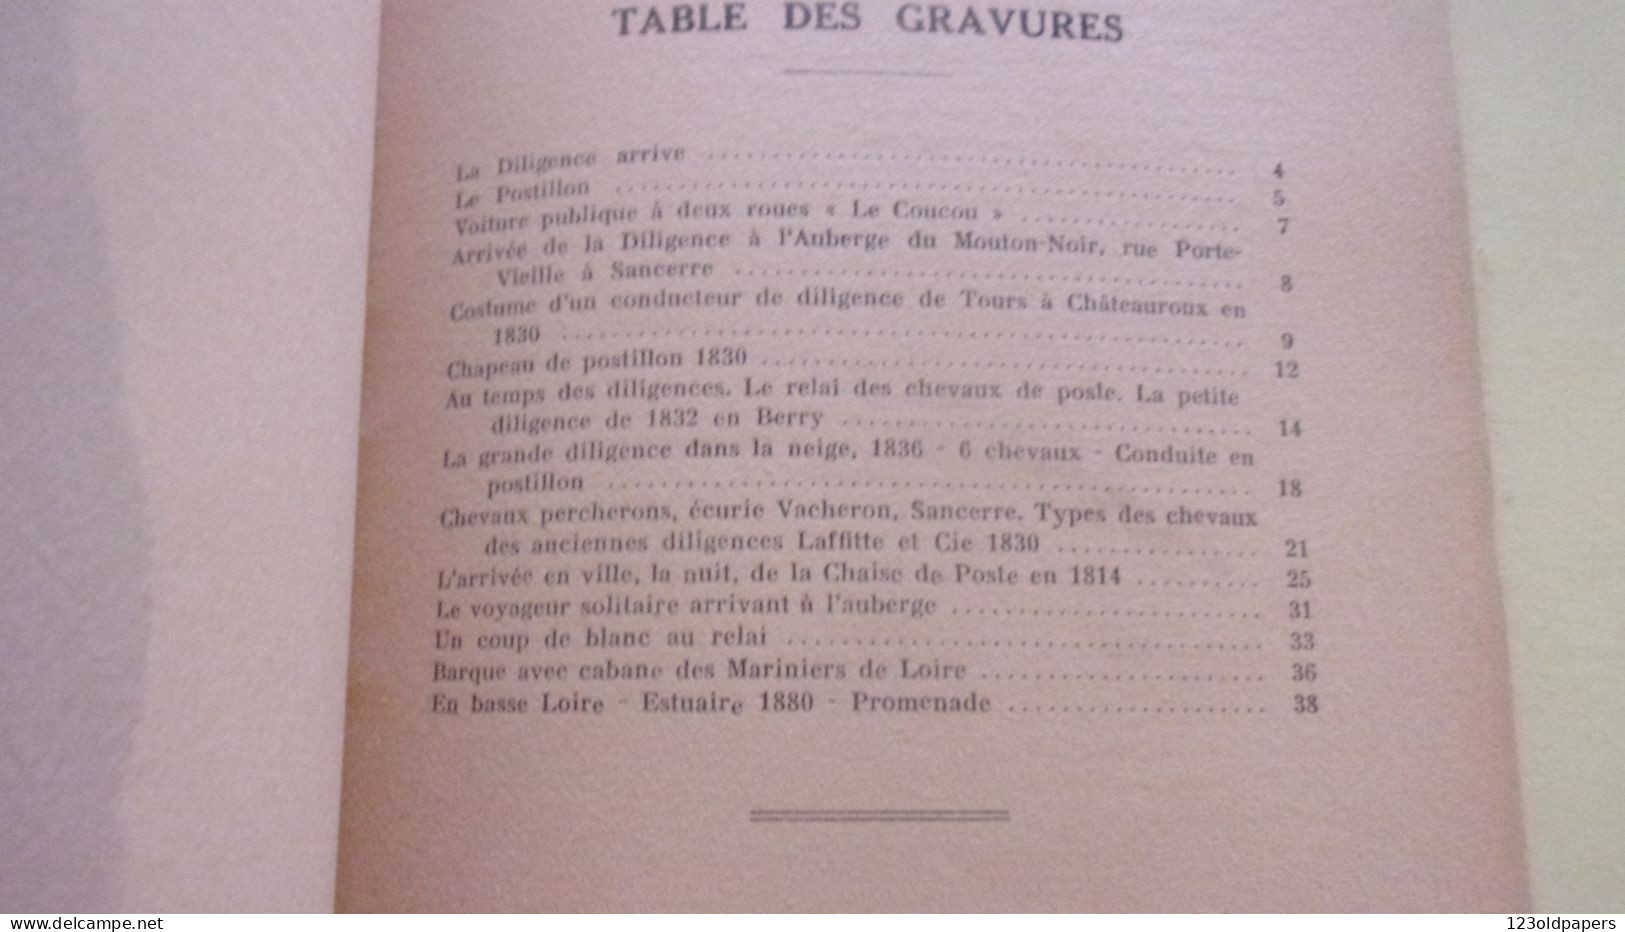 BERRY LES ANCIENS TRANSPORTS PUBLICS dans la region Sancerroise et ses environs immediats / MAREUSE ANDRE 1943 ENVOI